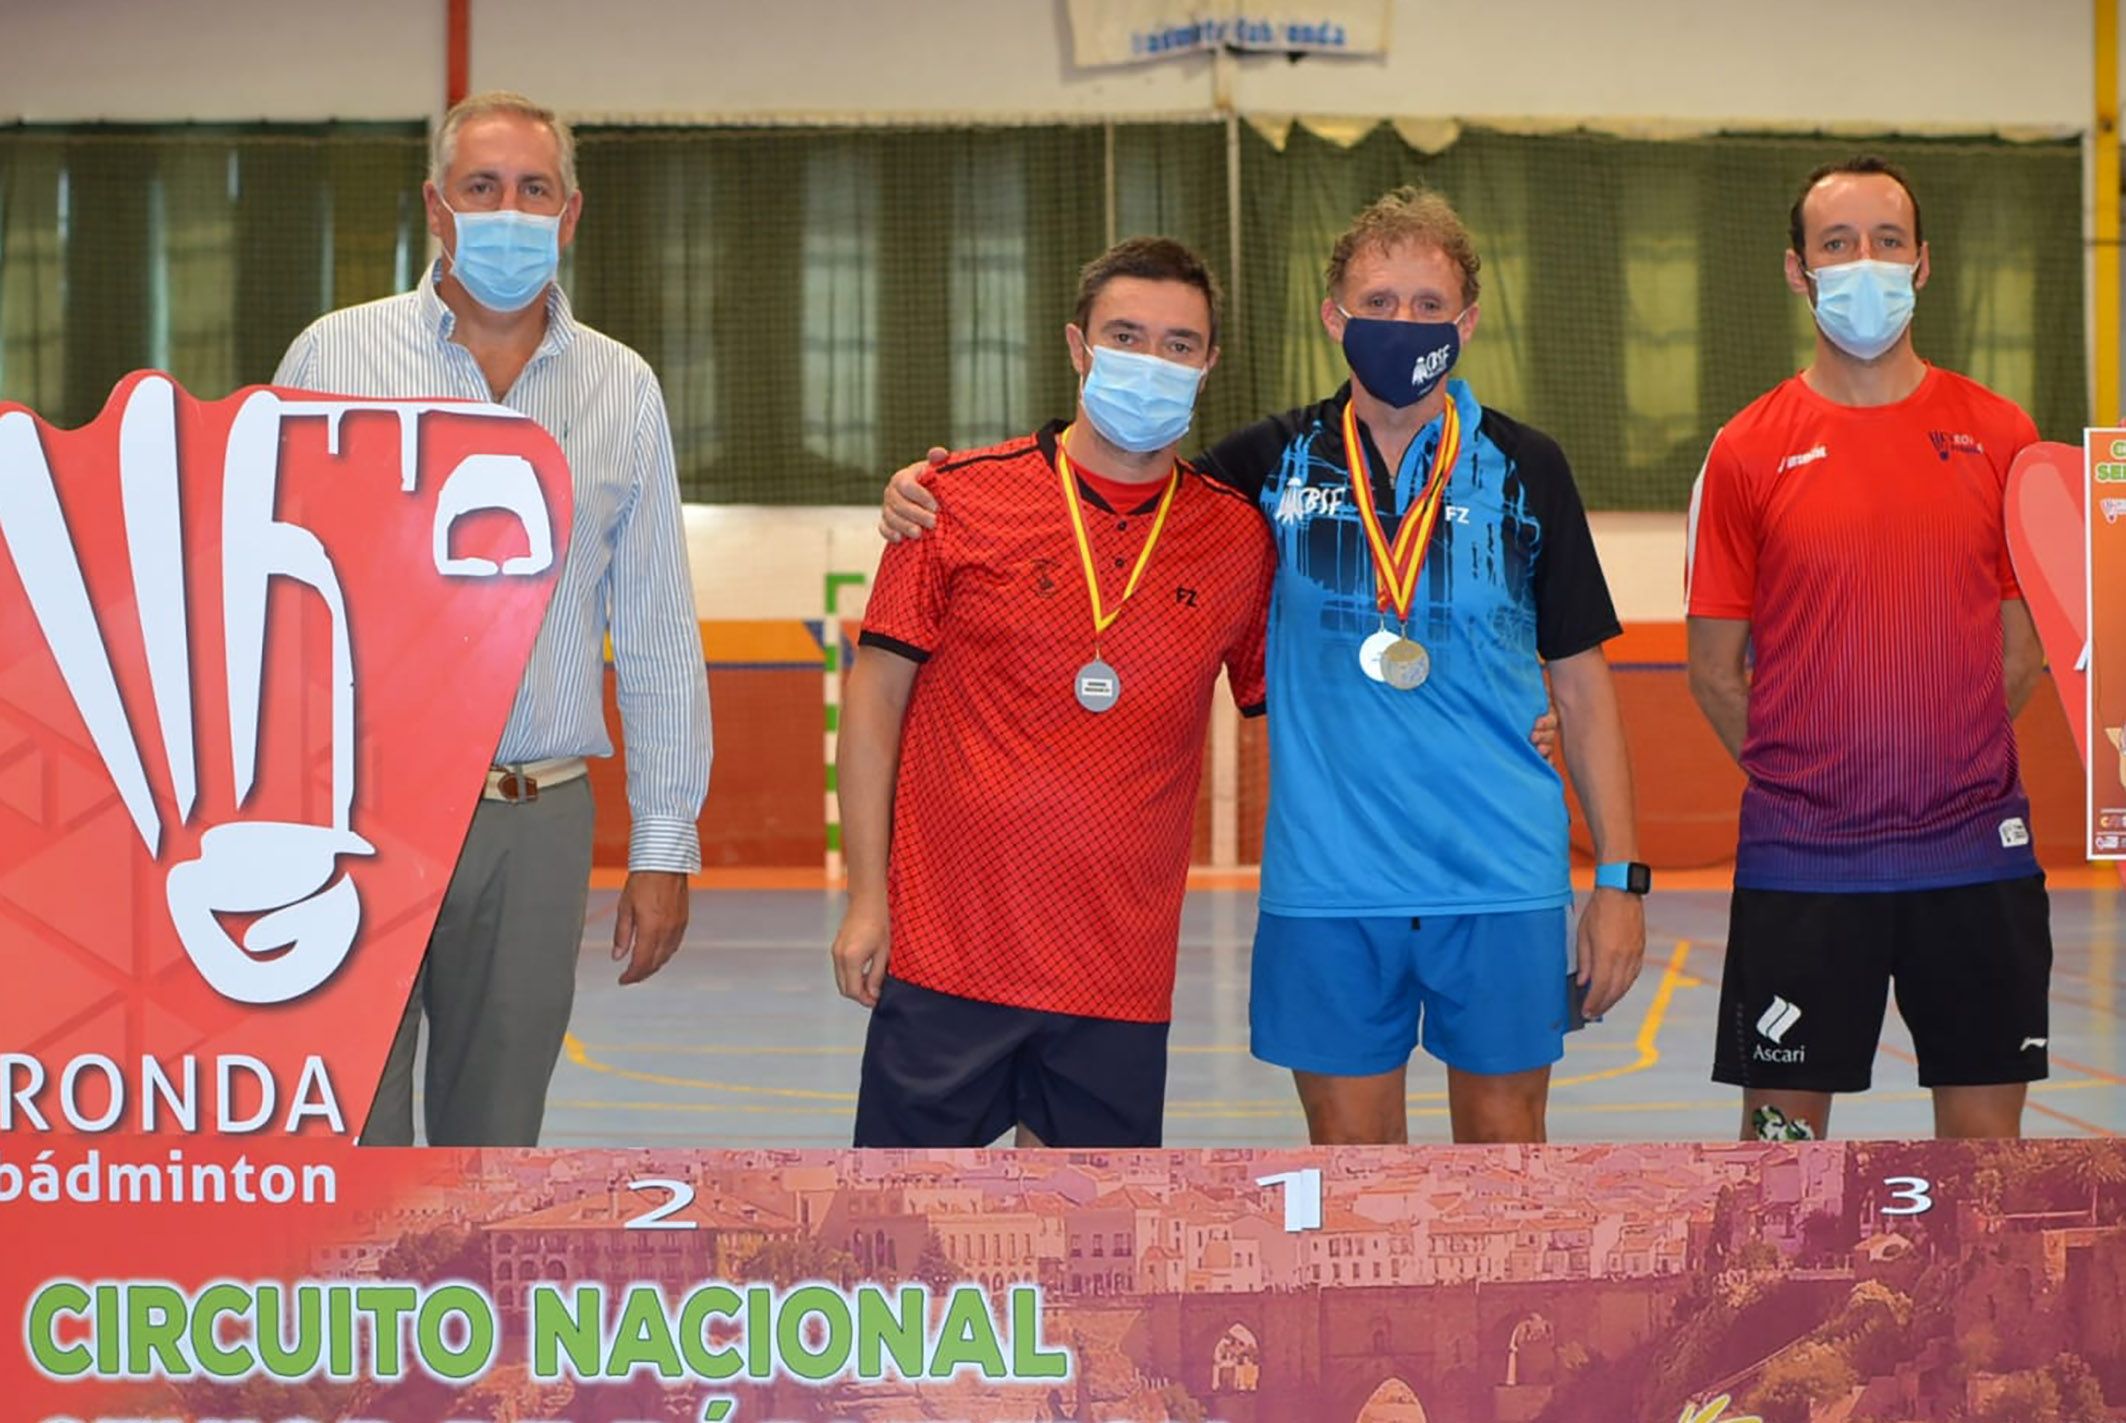 Tres oros una plata y tres bronces para el Bádminton Las Torres en la prueba de Ronda del circuito nacional sénior6